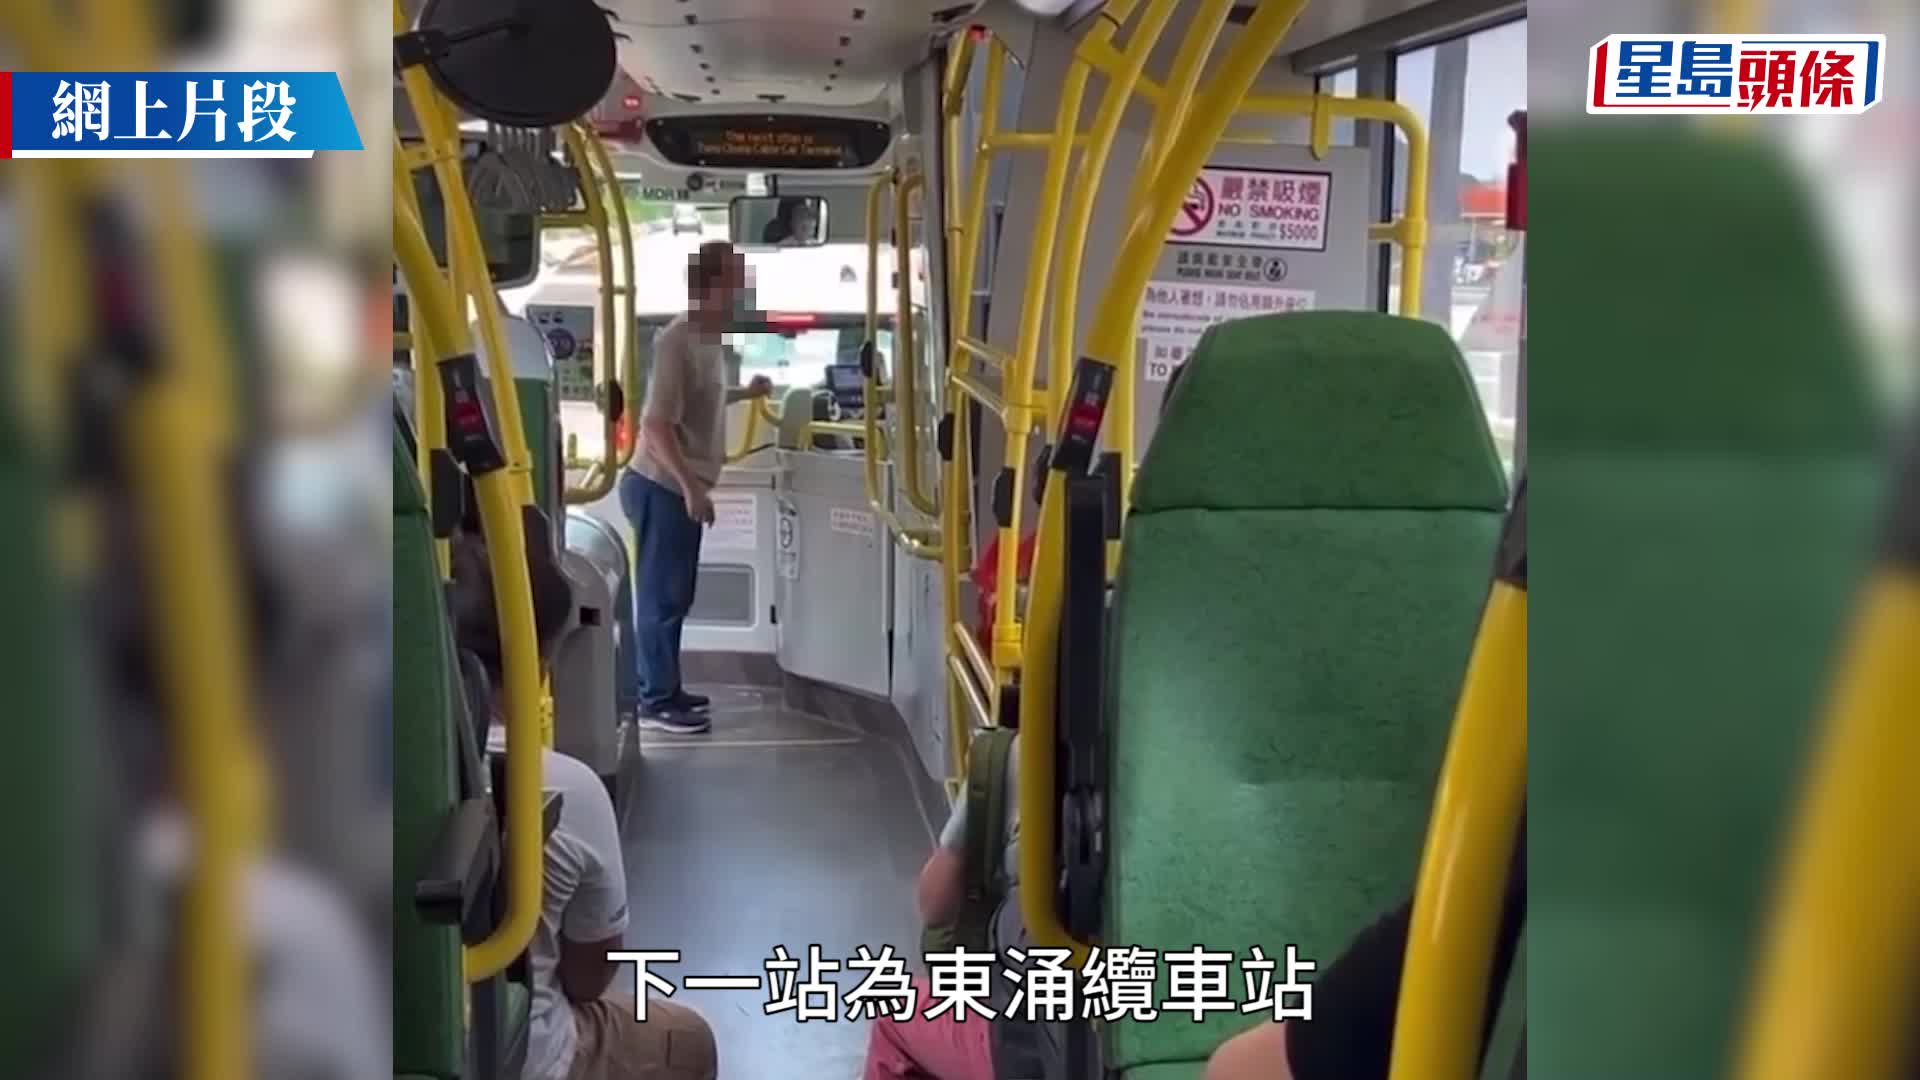 巴士離站趕唔切落車 躁漢要求路中開門被拒 狂爆粗兼搶司機cap帽